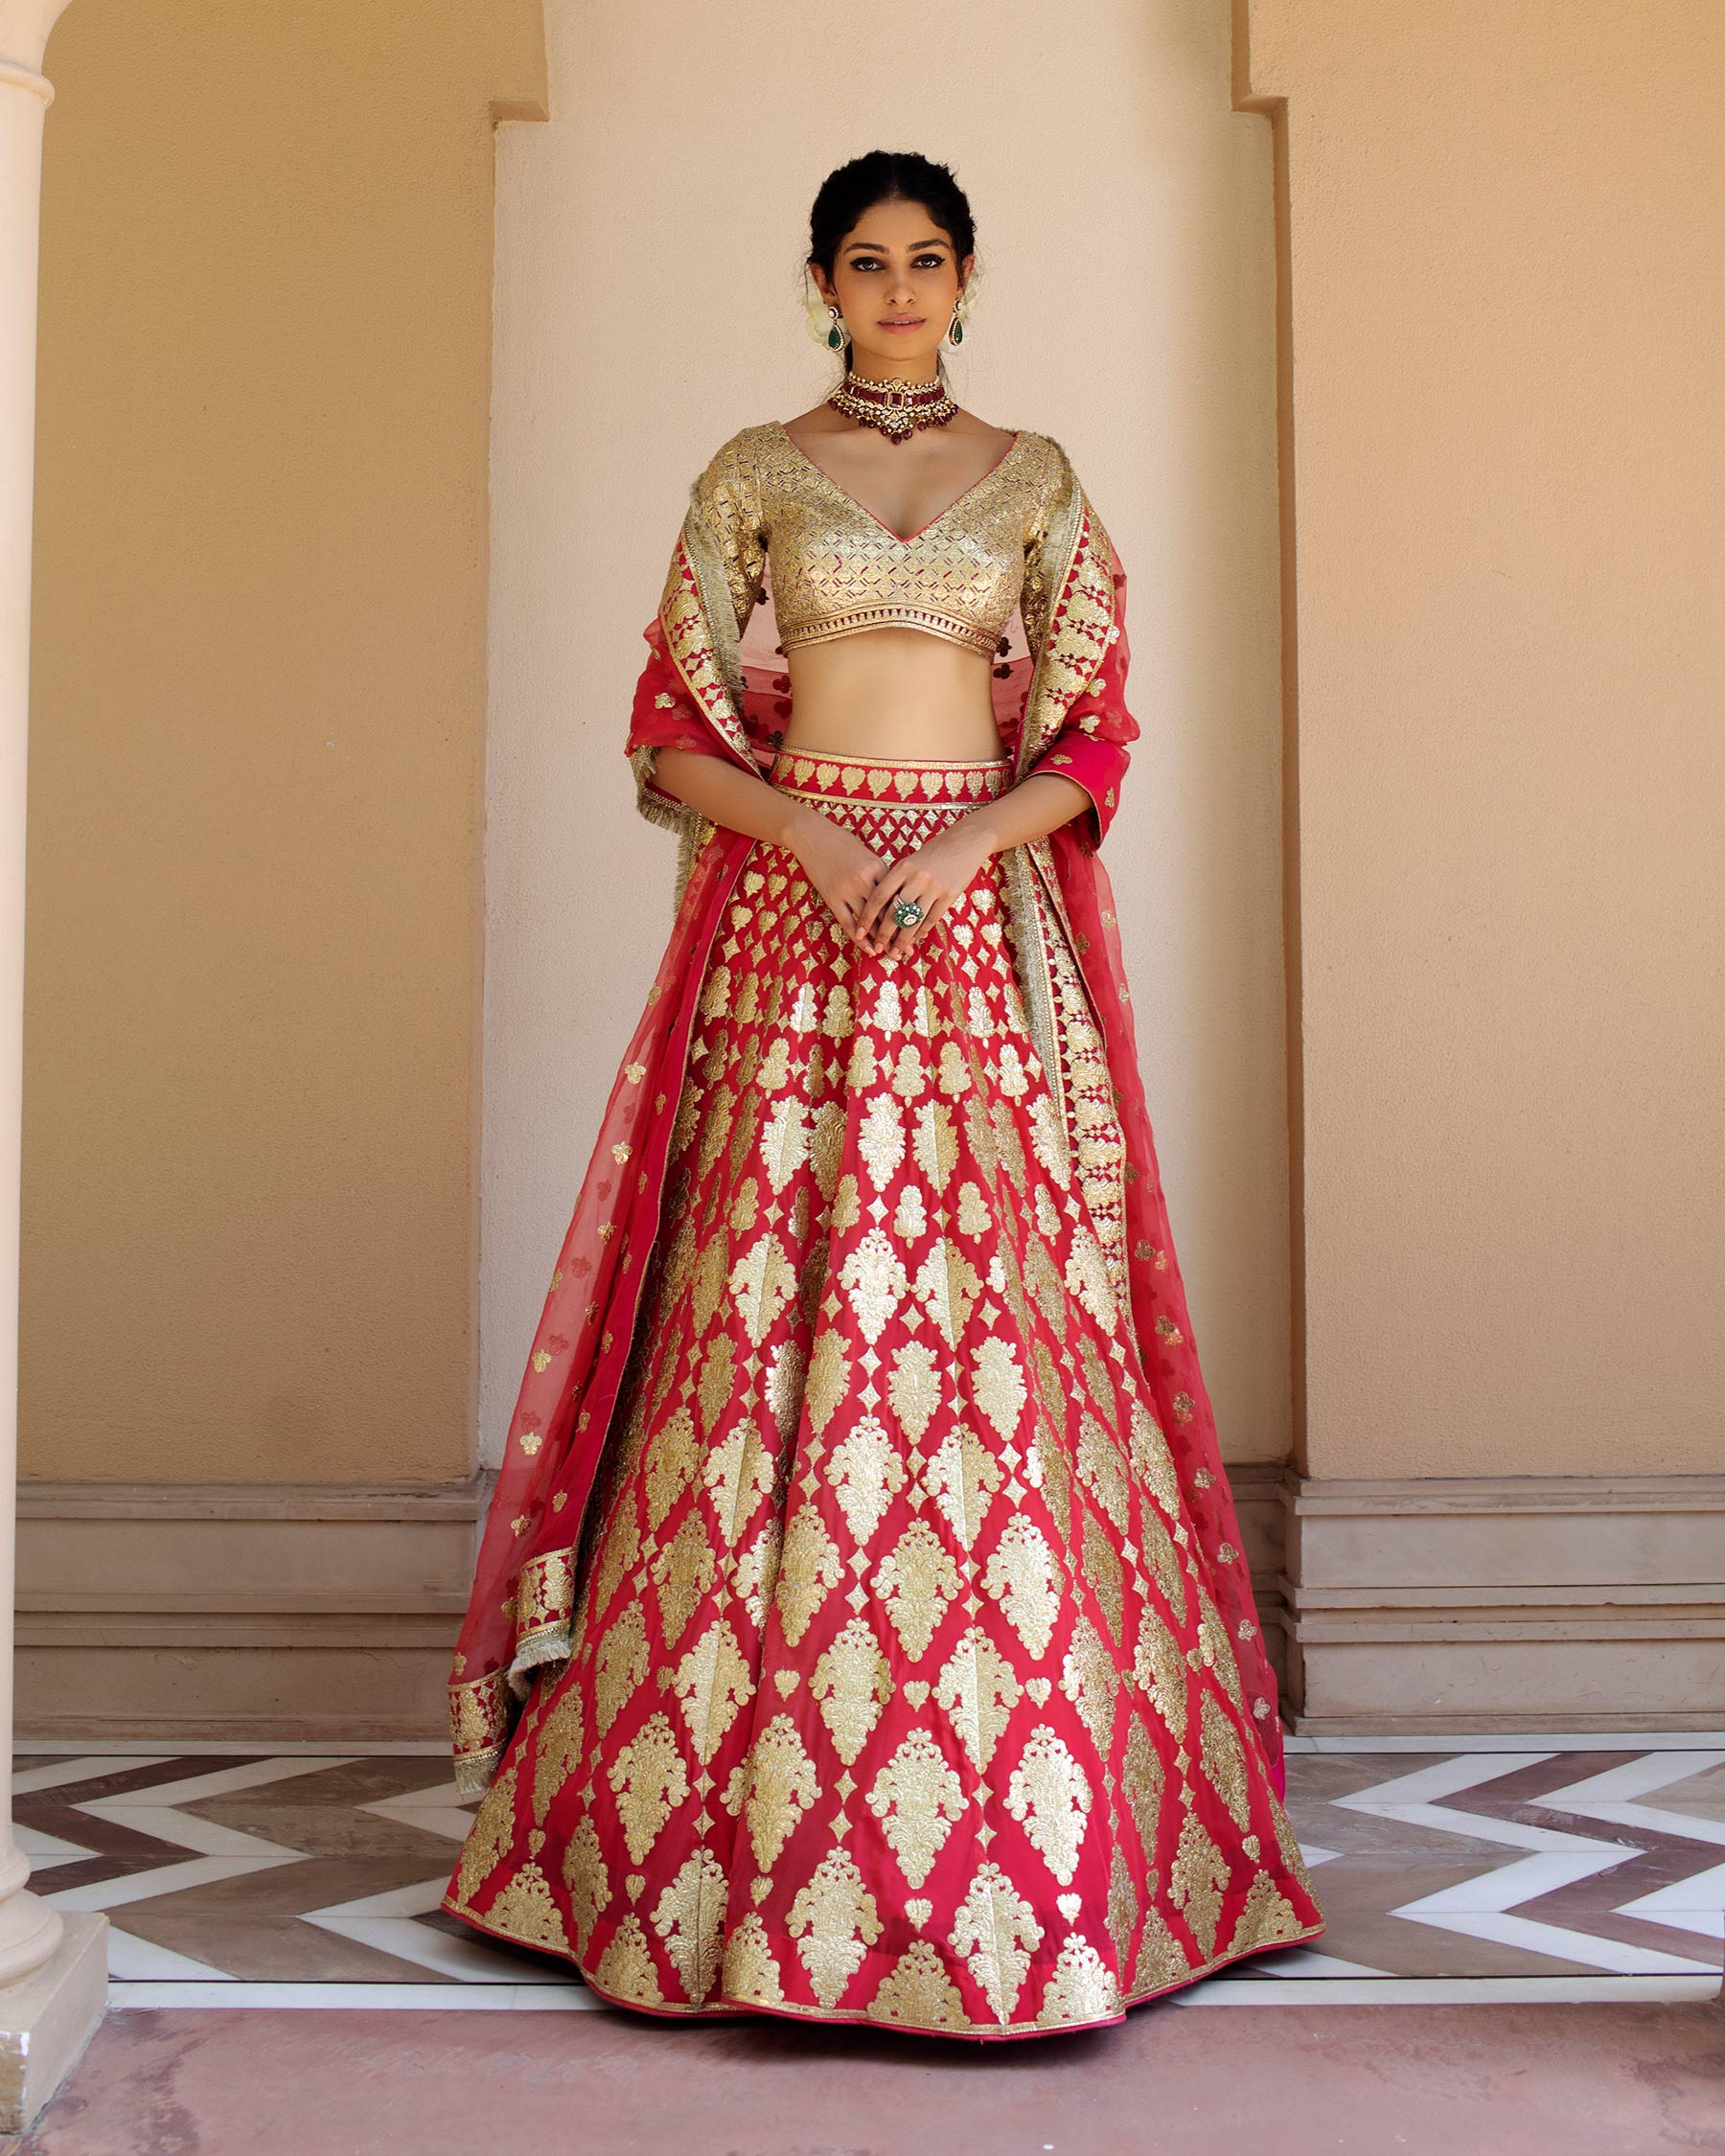 Beautiful Wedding dress red, Asian/Indian/Pakistani, heavy embroidery | eBay